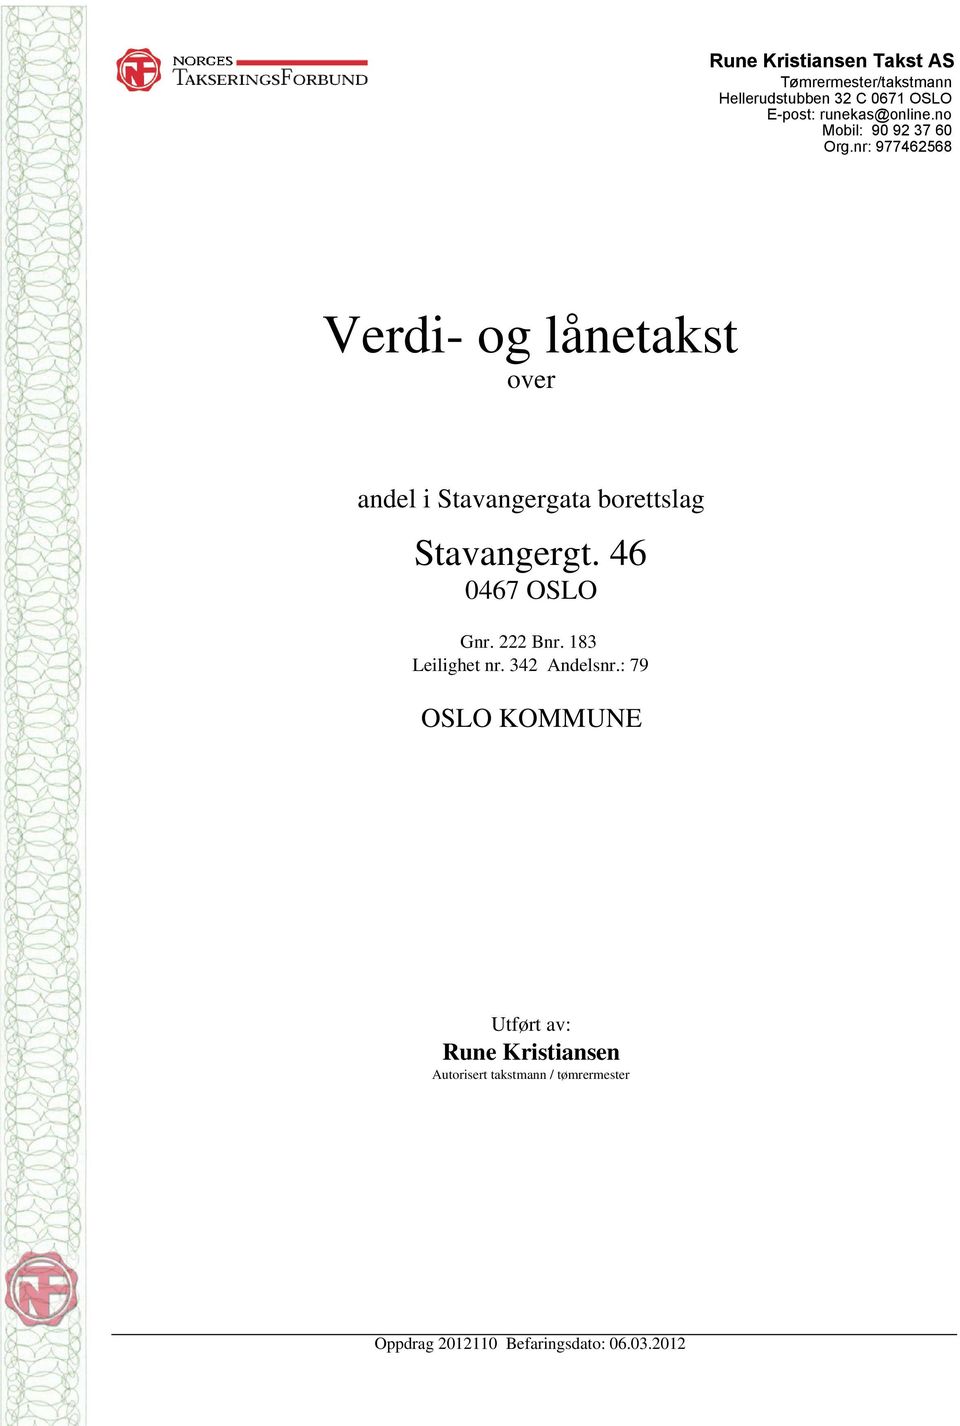 nr: 977462568 Verdi- og lånetakst over andel i Stavangergata borettslag Stavangergt.